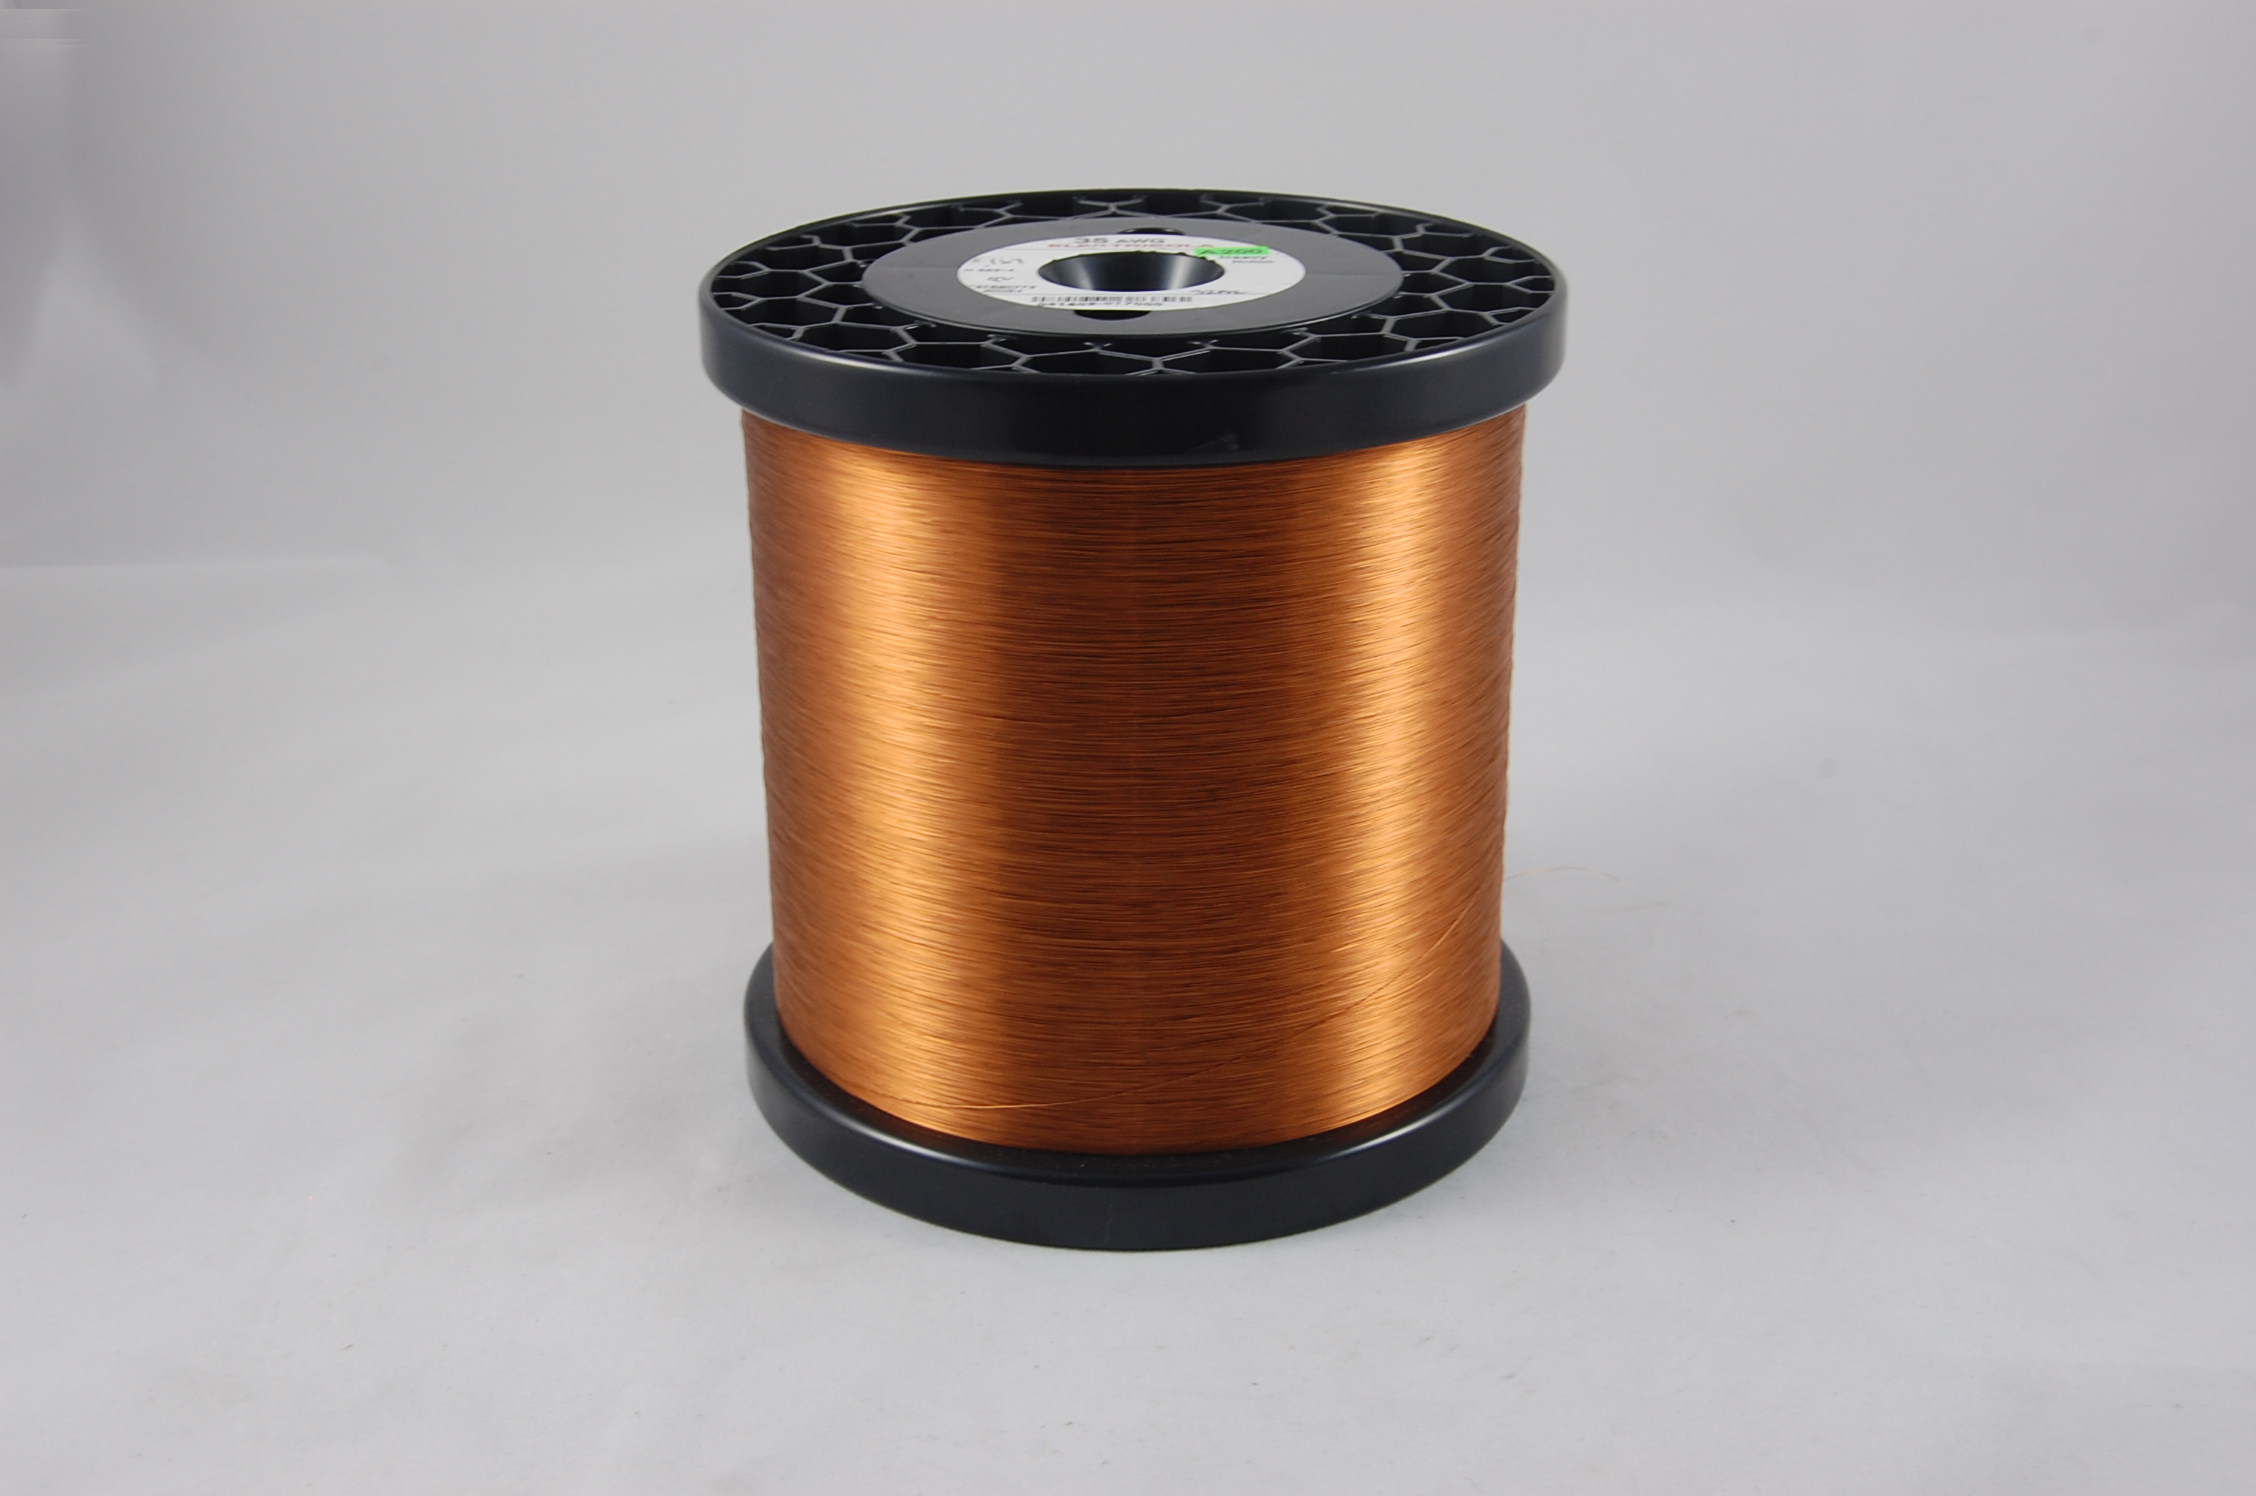 #35 Heavy Amidester 200 Round MW 74 Copper Magnet Wire 200°C, copper,  14 LB 6" x 6" spool (average wght.)